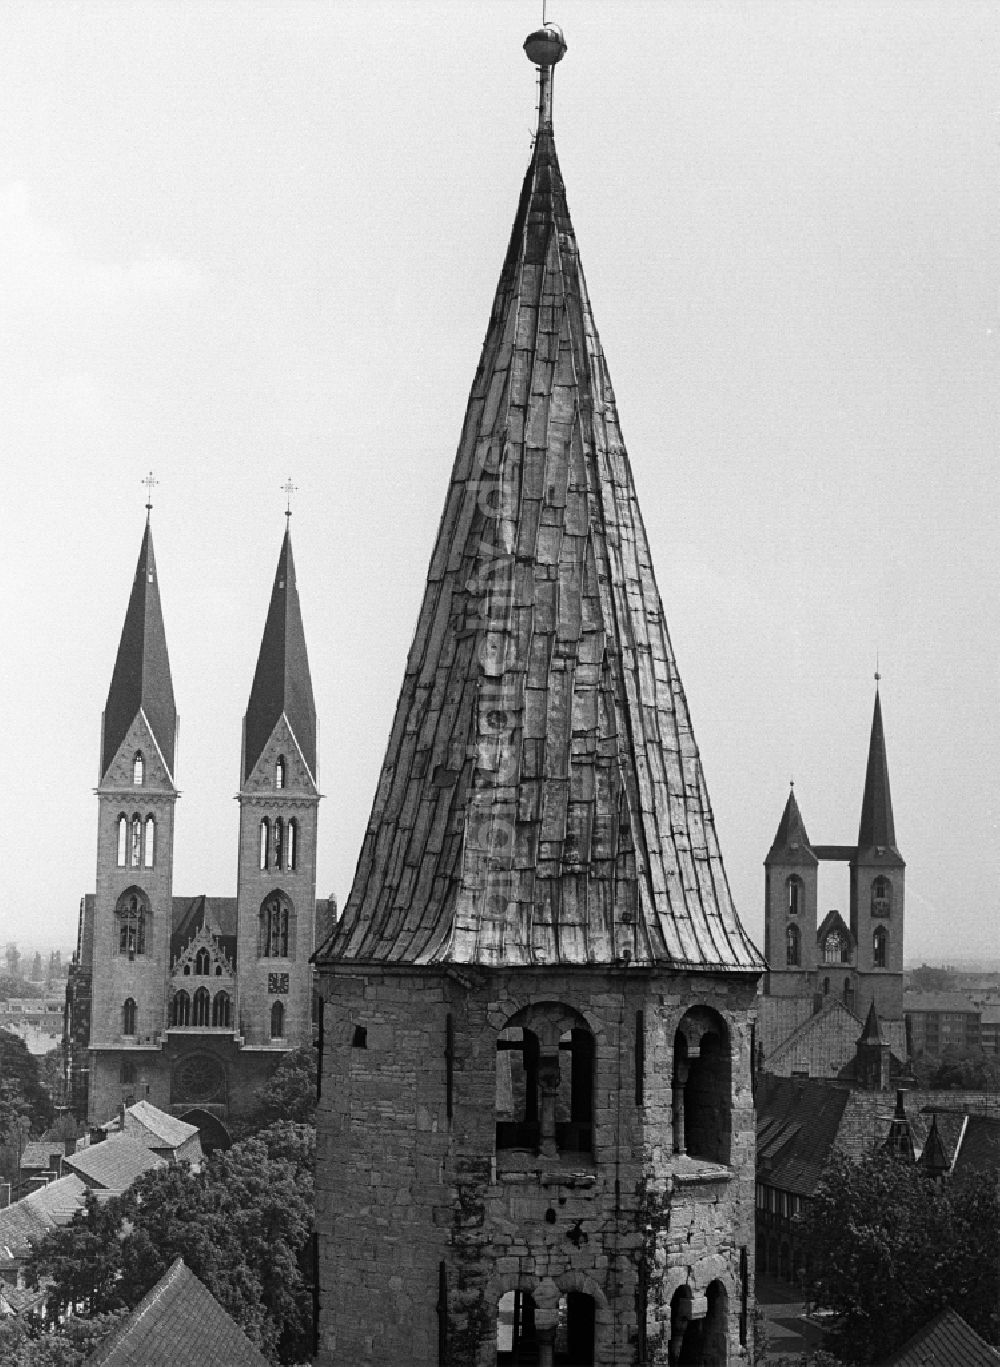 Halberstadt: Glockenturm der Kirche Liebfrauenkirche, Martinikirche und Dom in Halberstadt in Sachsen-Anhalt in der DDR